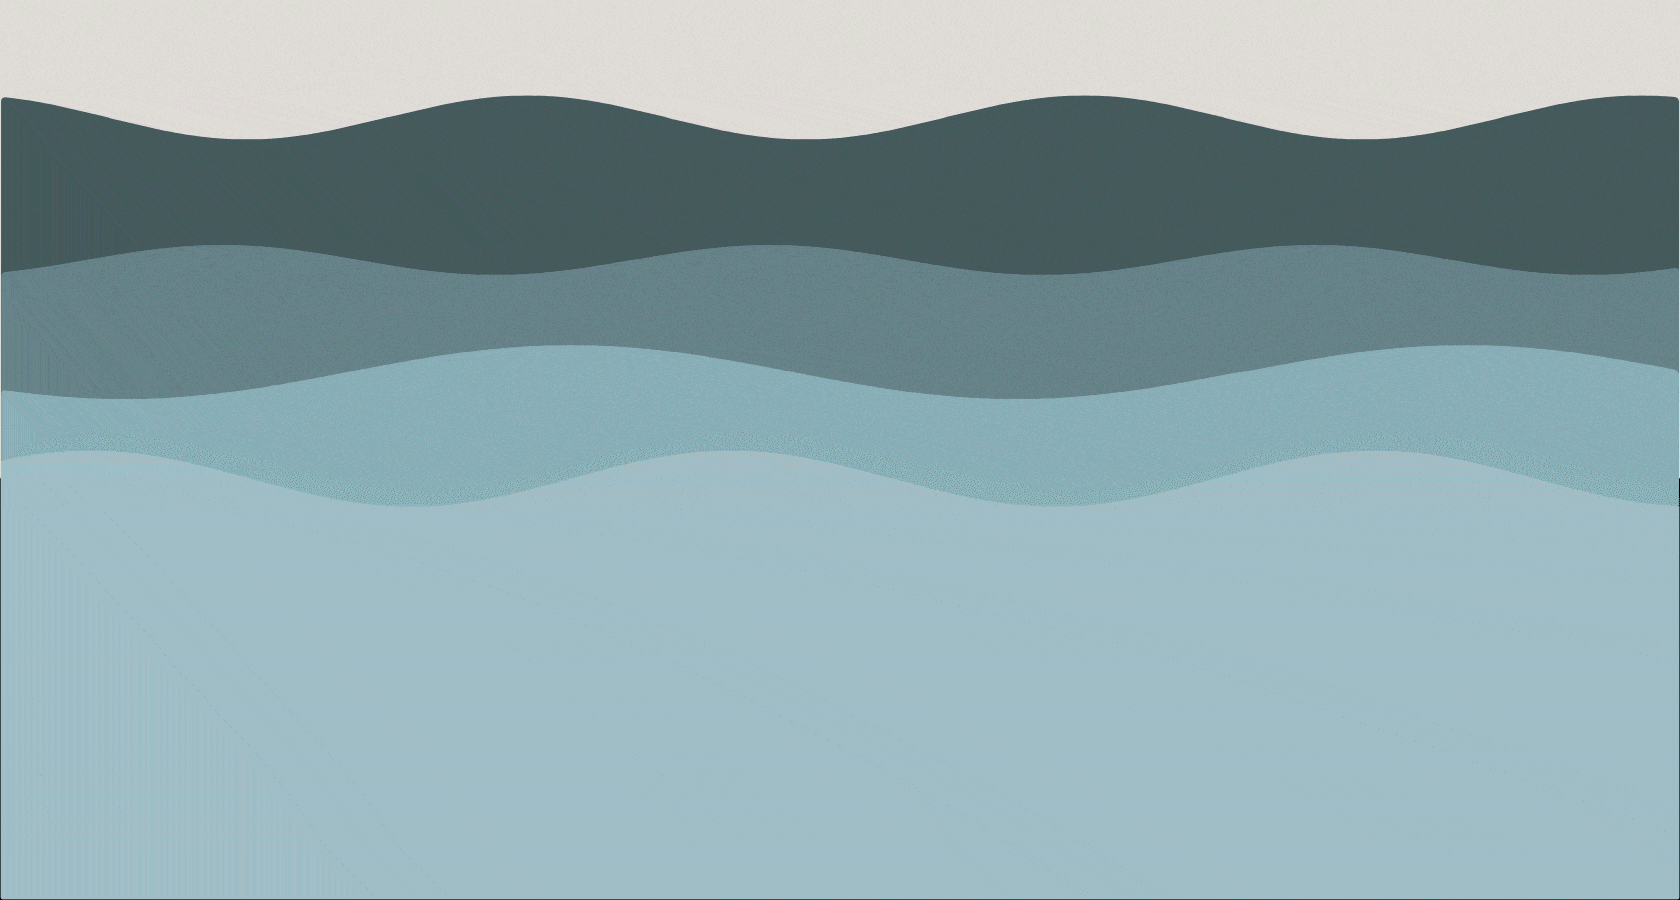 GIFs de vagues de l'océan